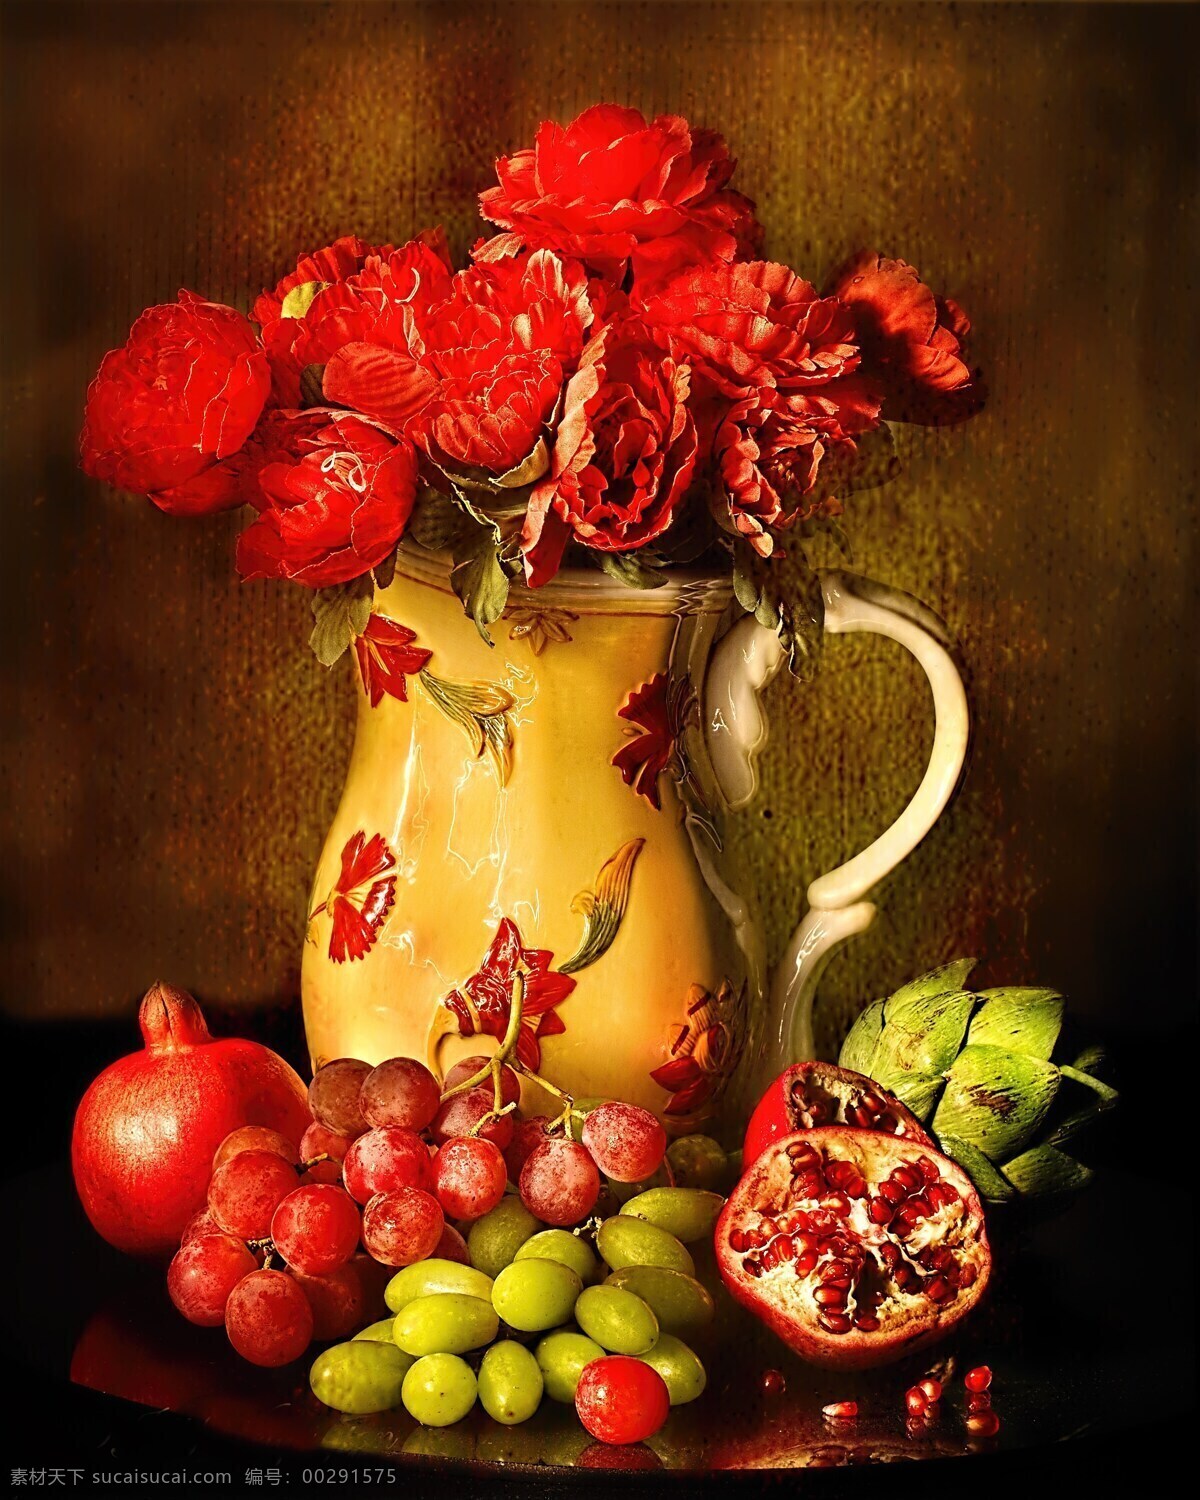 水果静物 水果 静物 油画 花卉 提子 葡萄 石榴 文化艺术 美术绘画